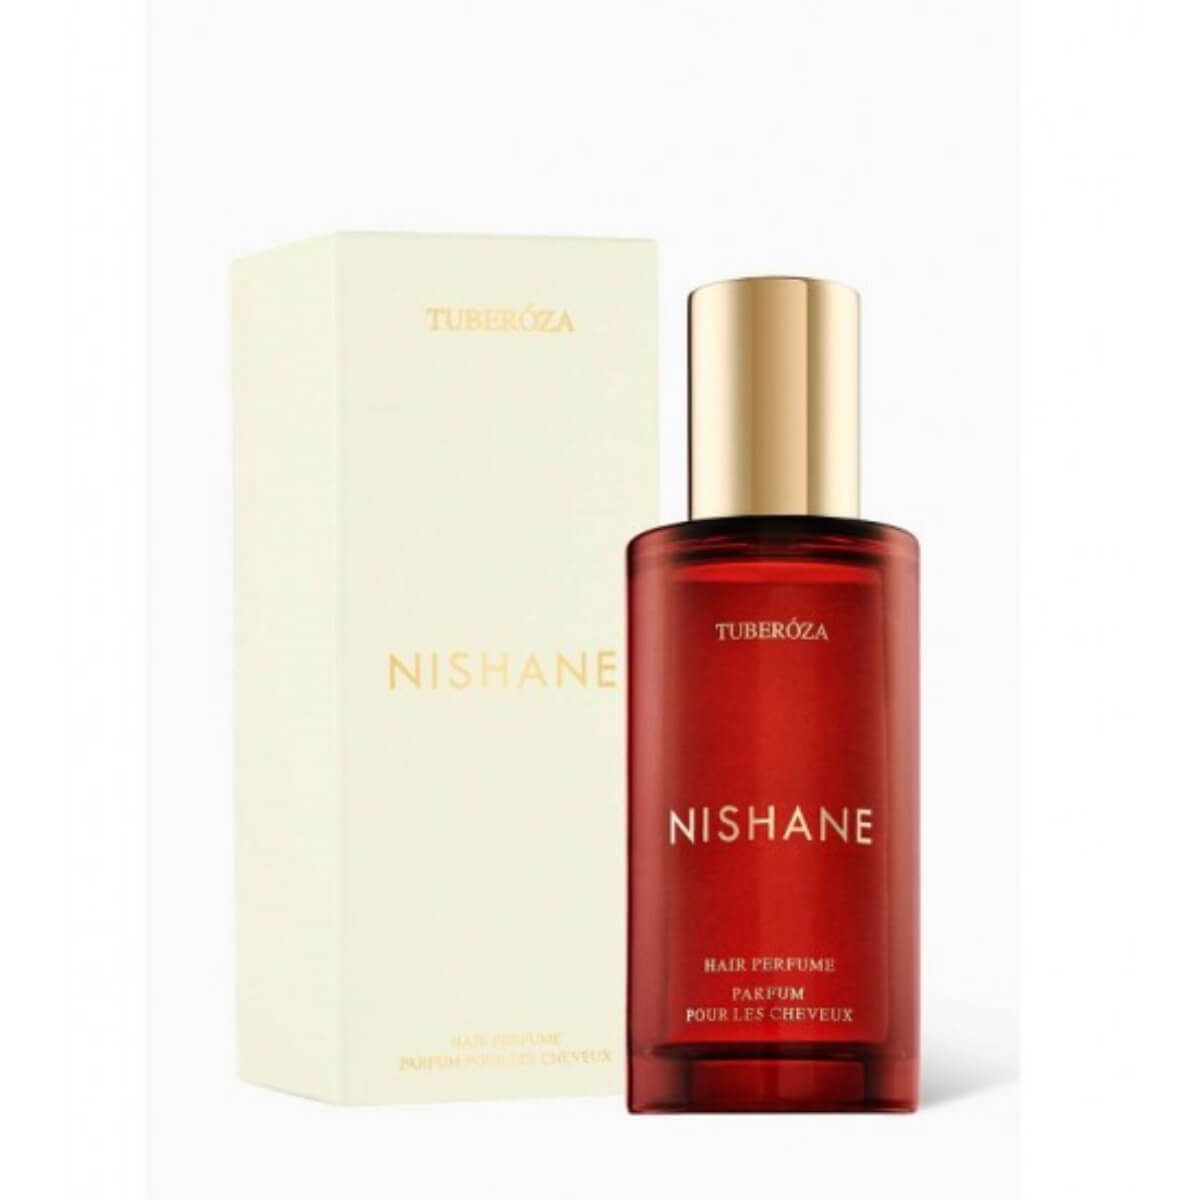 Nishane Tuberoza Hair Perfume 50ML